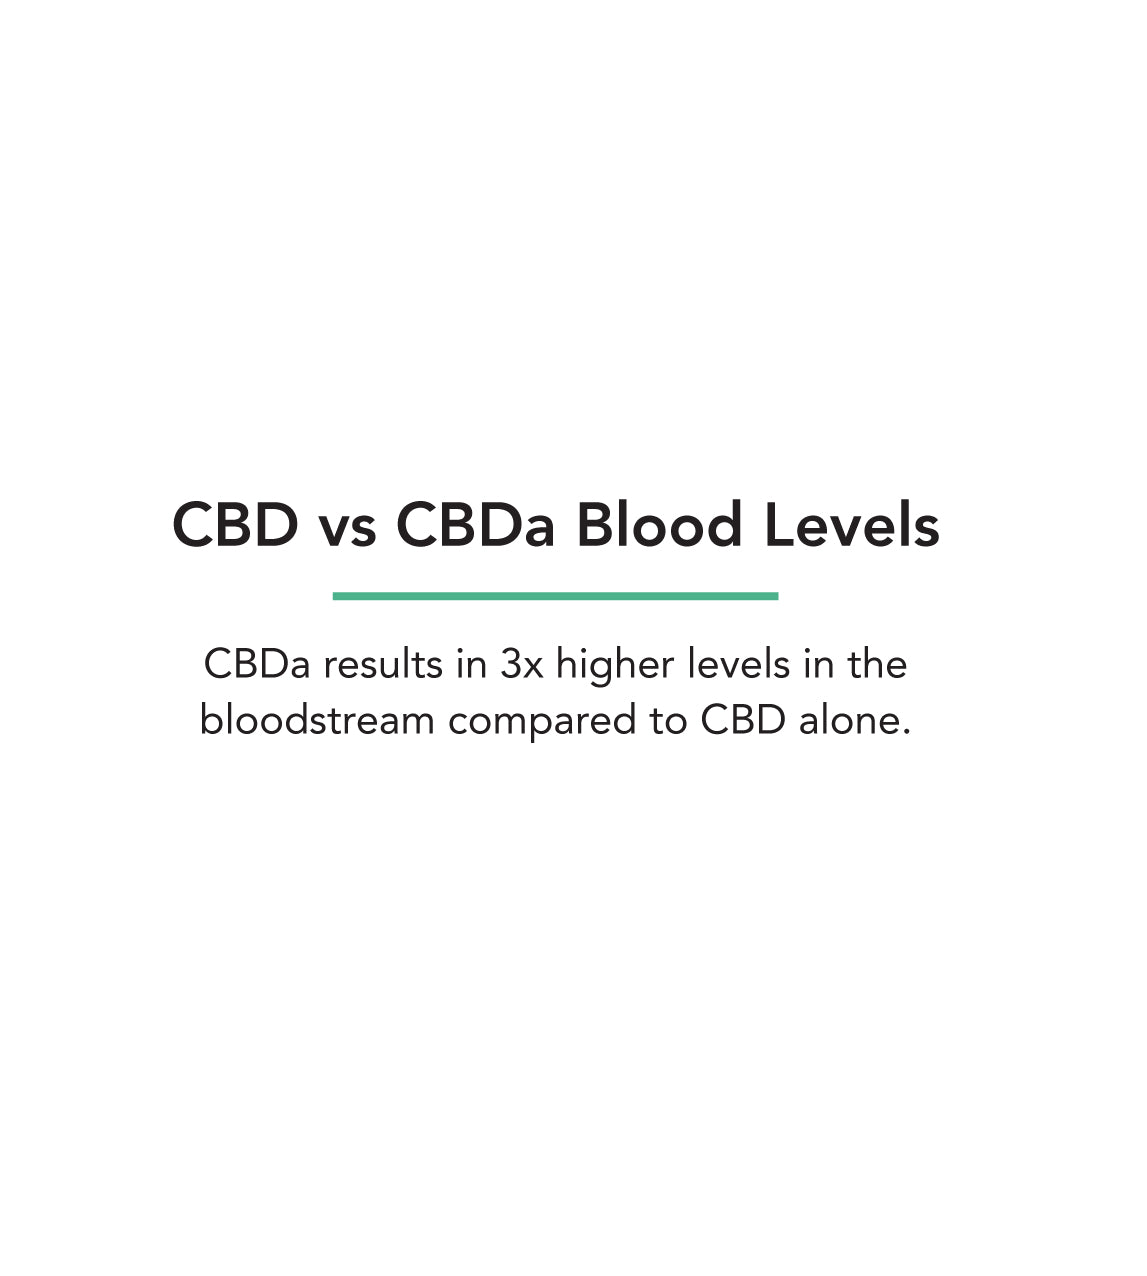 CBDa Blood Levels